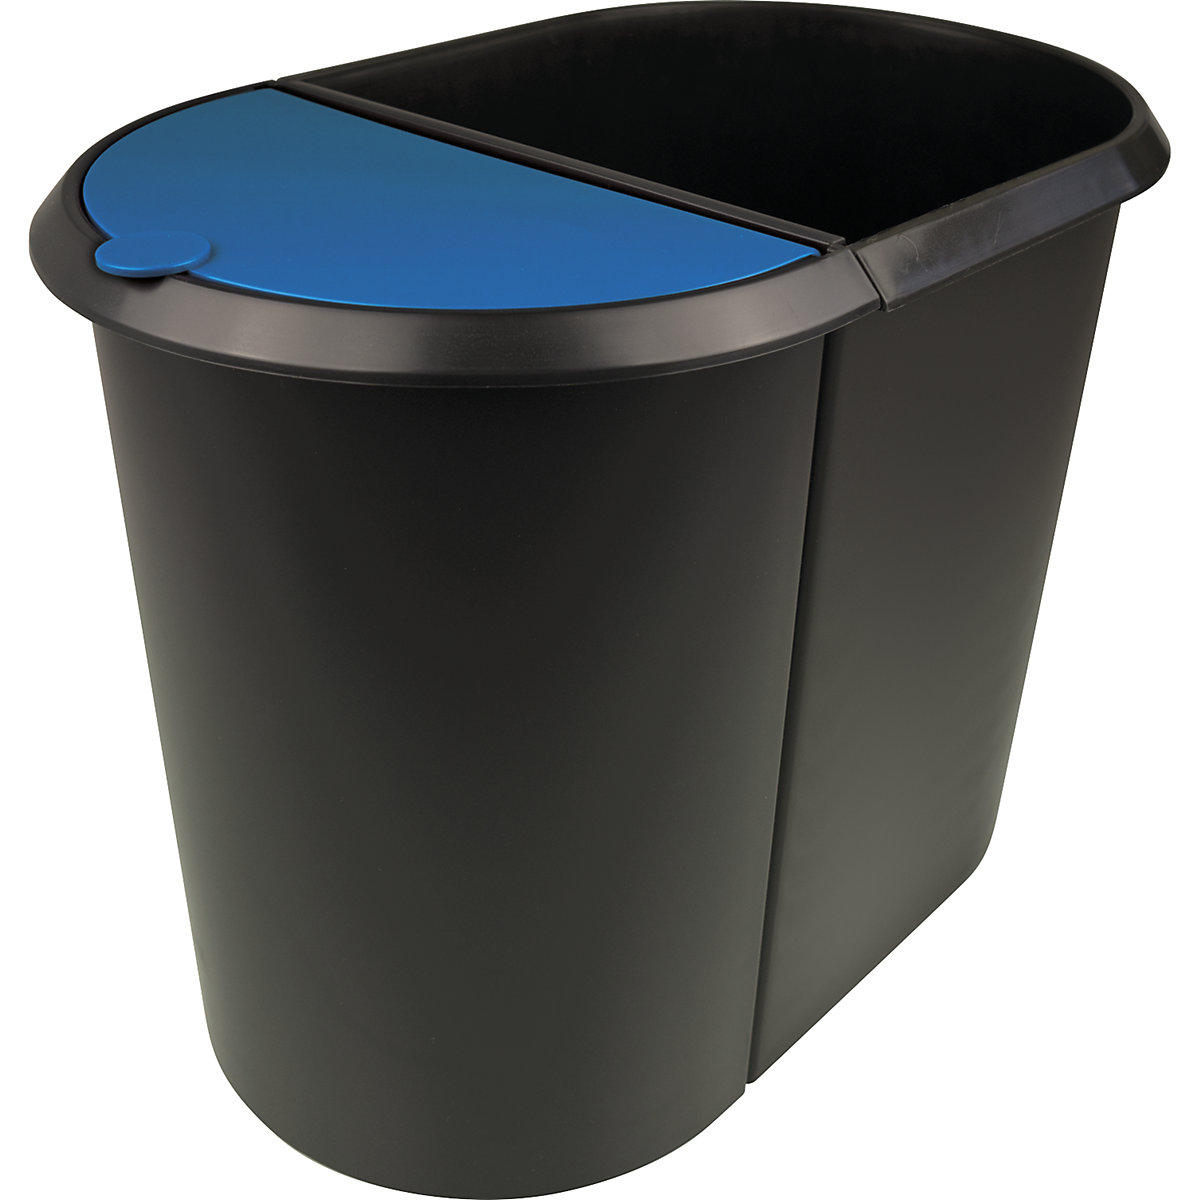 helit – Waste bin system, DUO, blue lid, black body, pack of 2